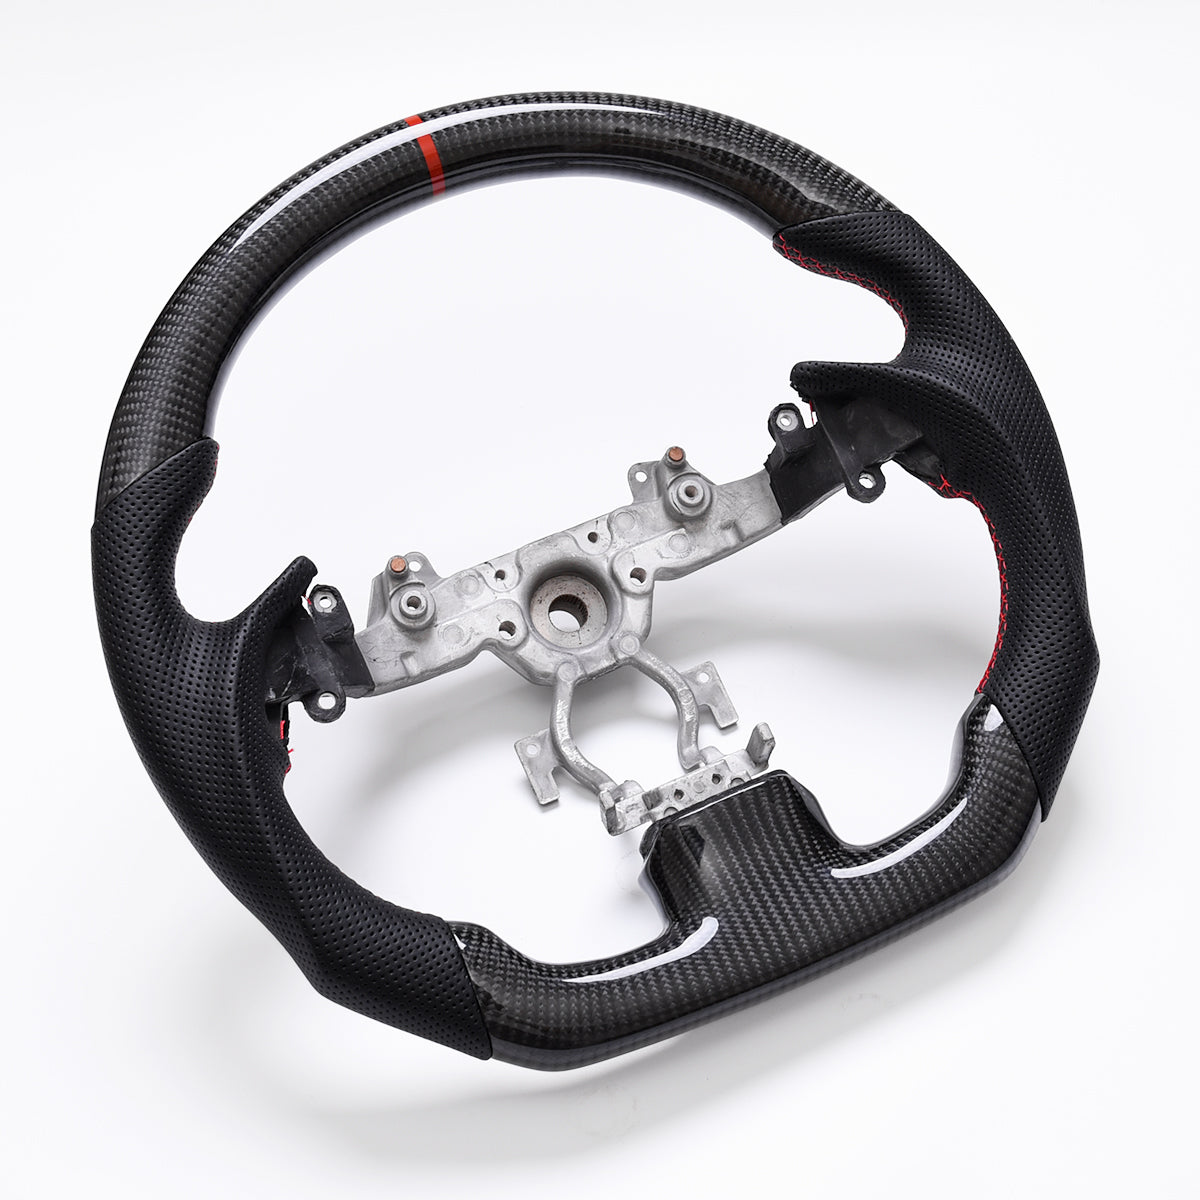 Revolve Carbon Fiber OEM Steering Wheel | Infiniti G37 2008-2013 - revolvesteering